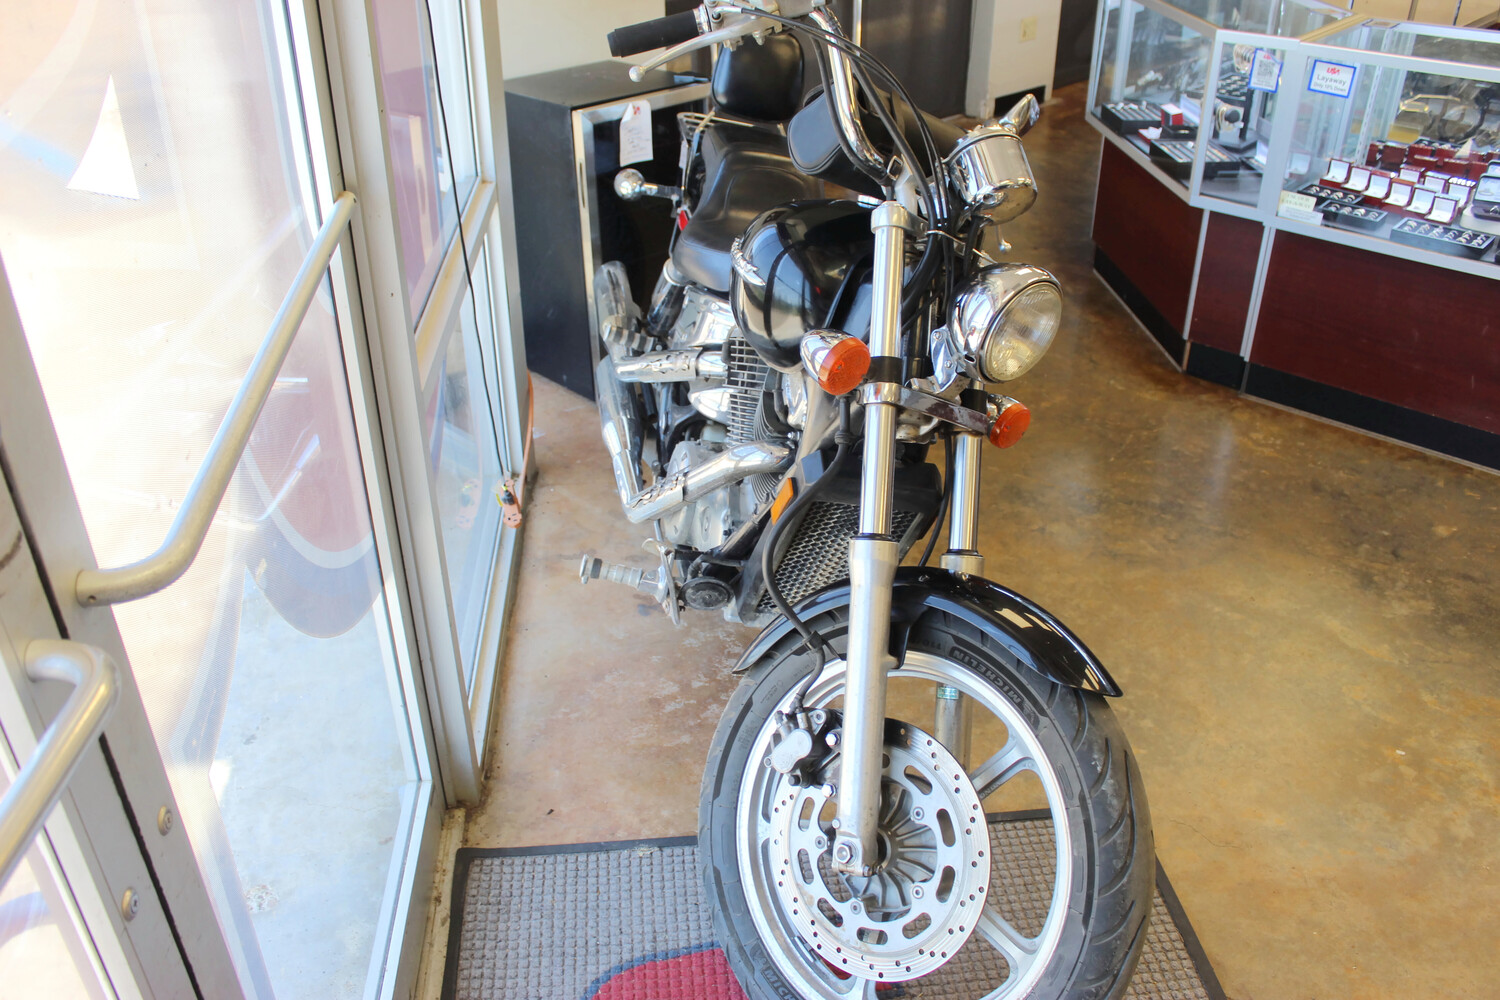 2004 HONDA SHADOW VT1100 MOTORCYCLE